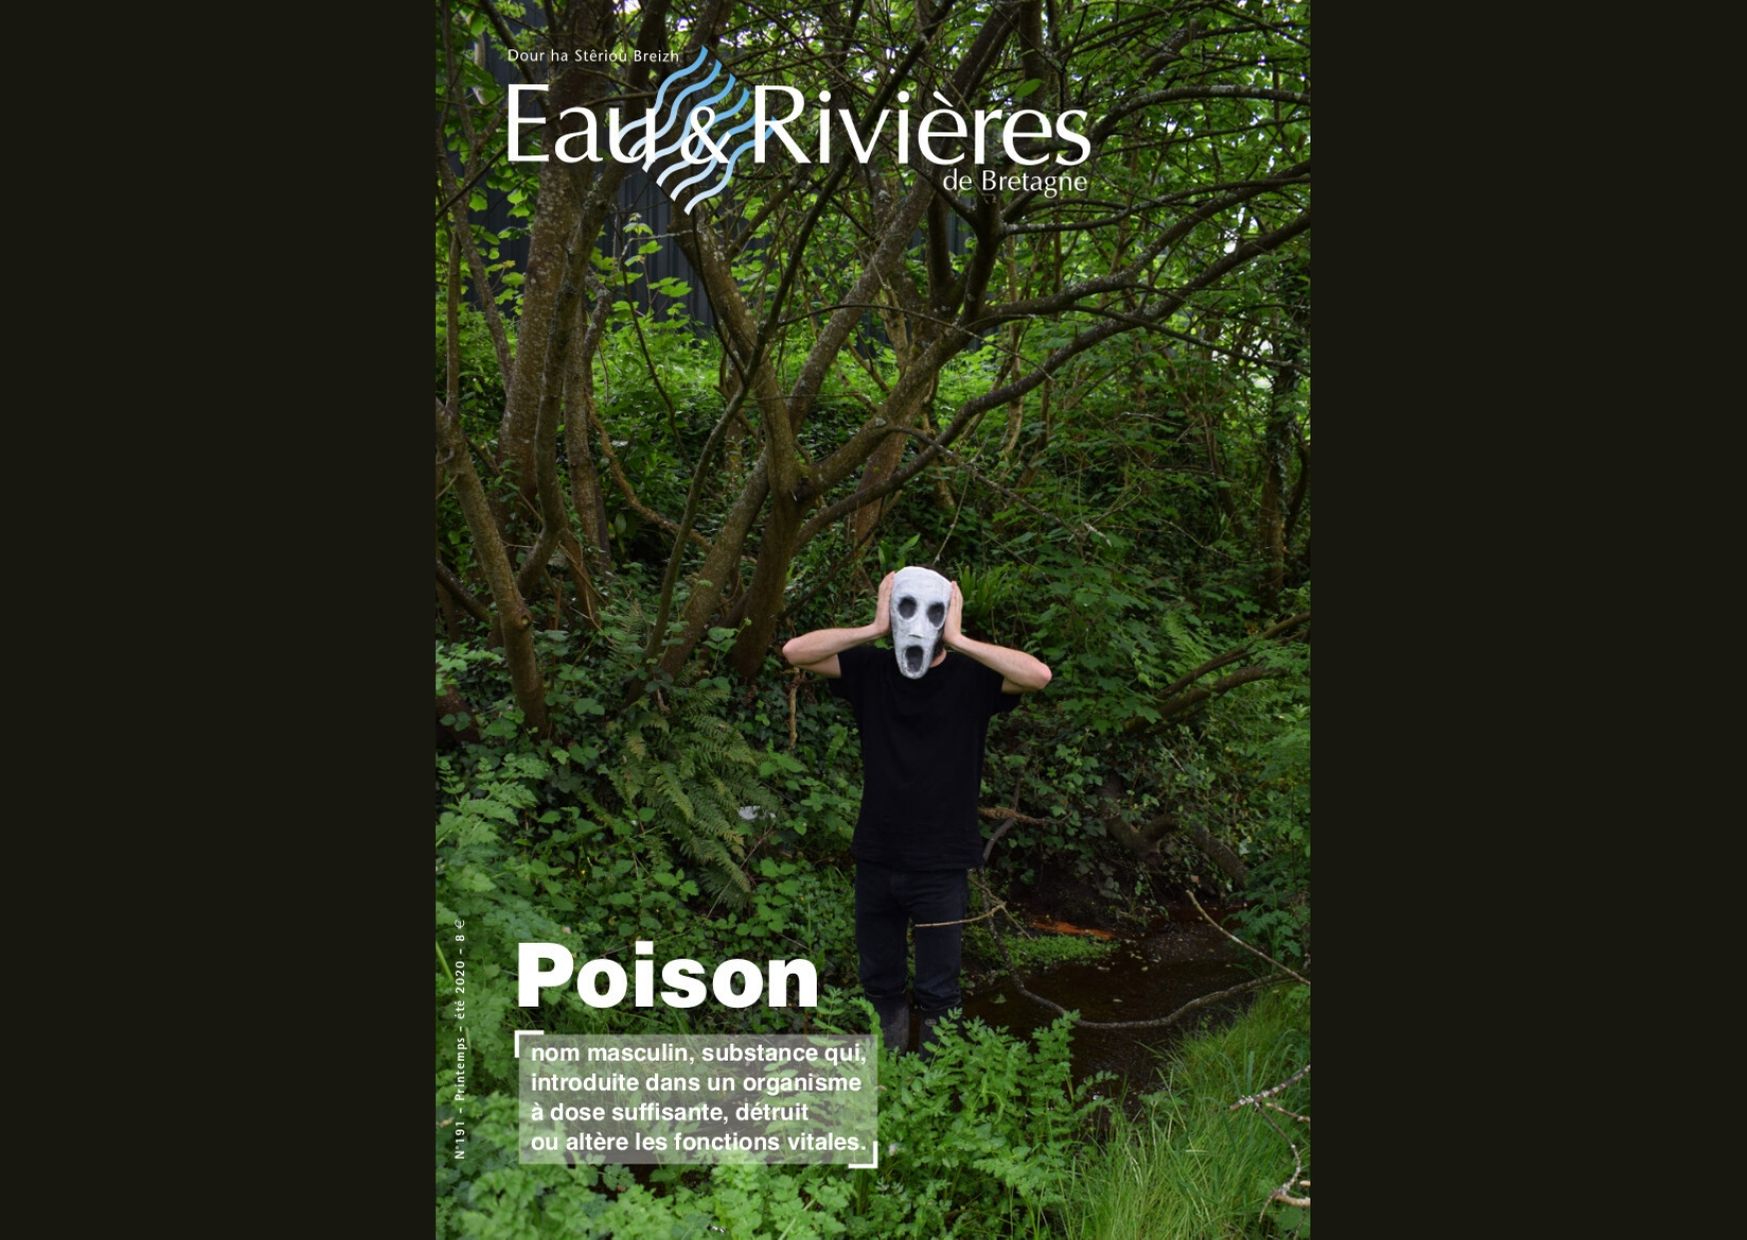 Lisez notre magazine spécial sur les poisons